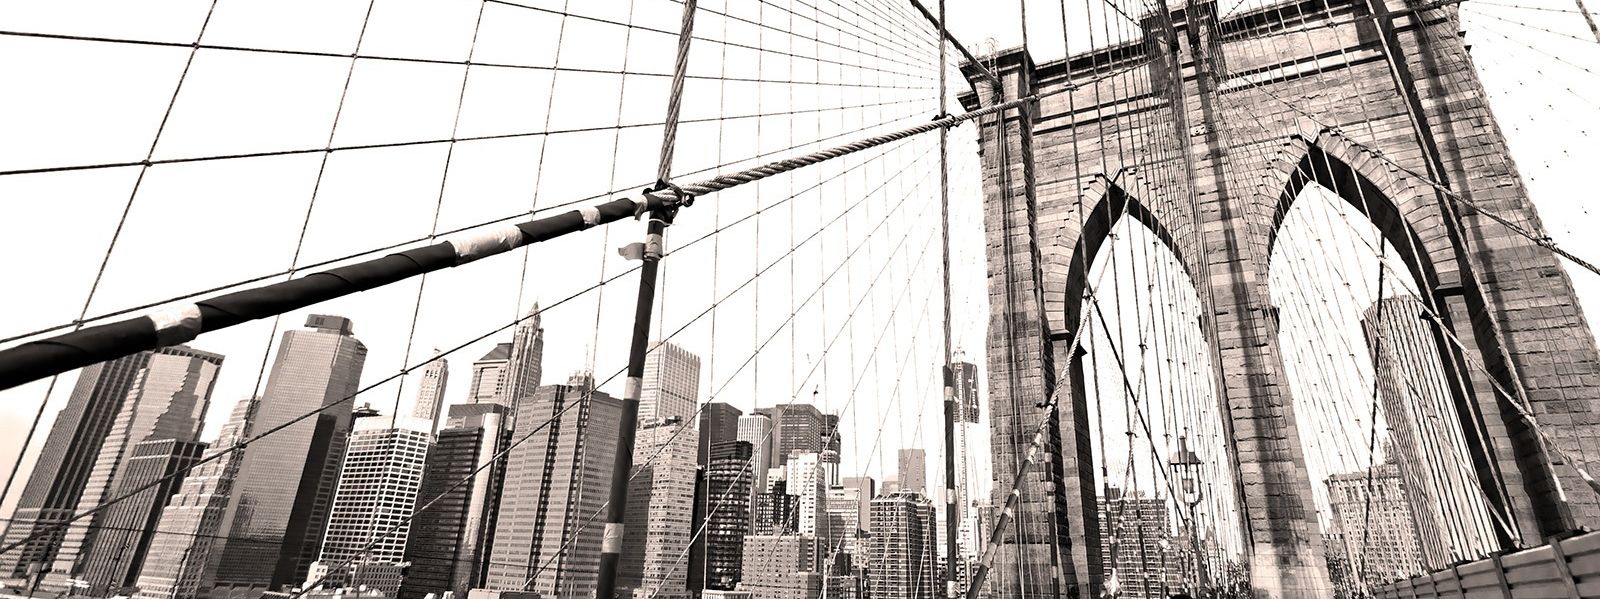 Brooklyn Bridge, New York City, NY